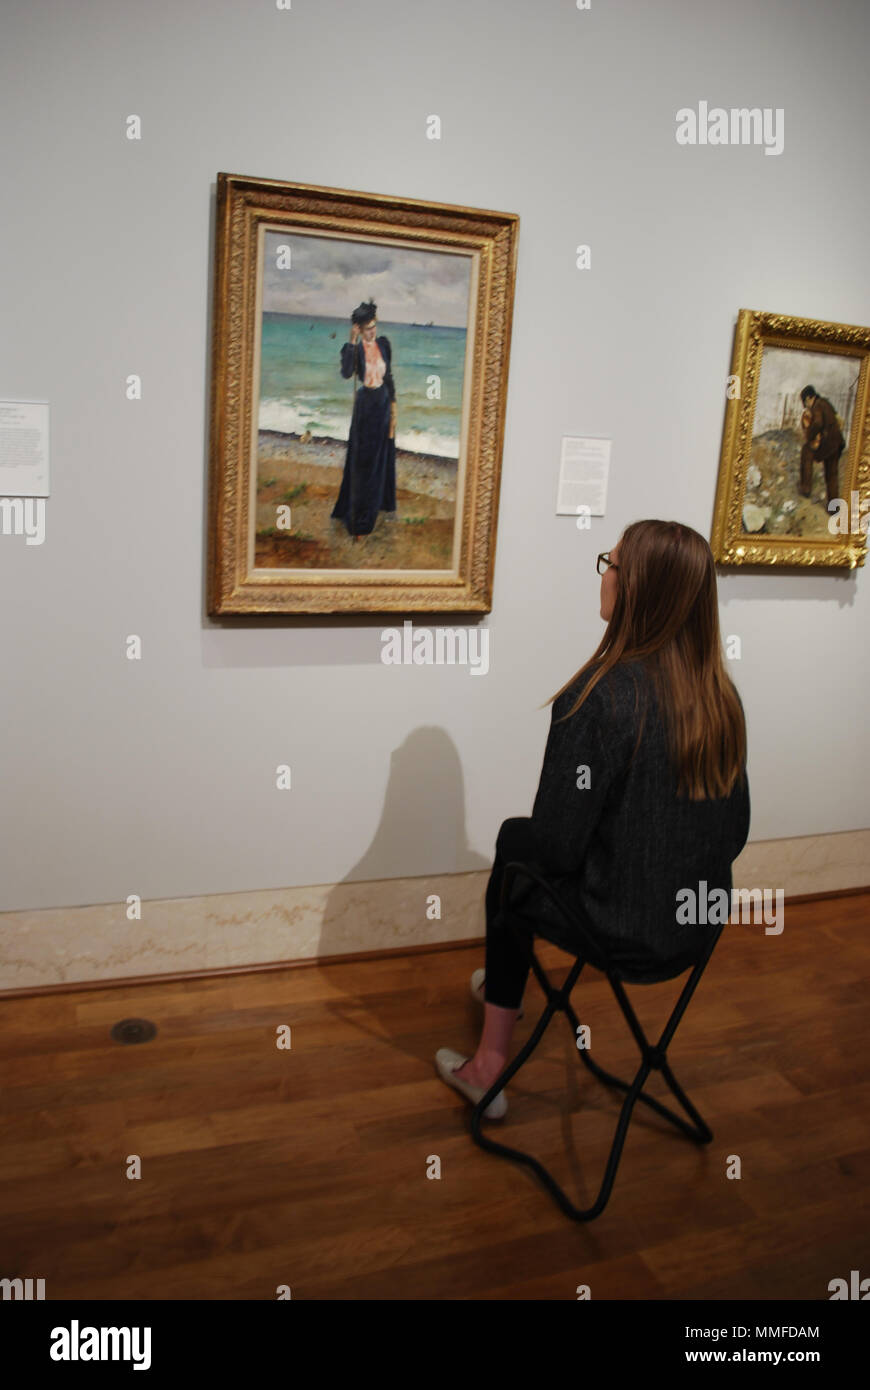 Chica ve en el famoso lienzo en el museo de arte . Concepto de la curiosidad, la educación, la inteligencia, el pasatiempo. Foto de stock